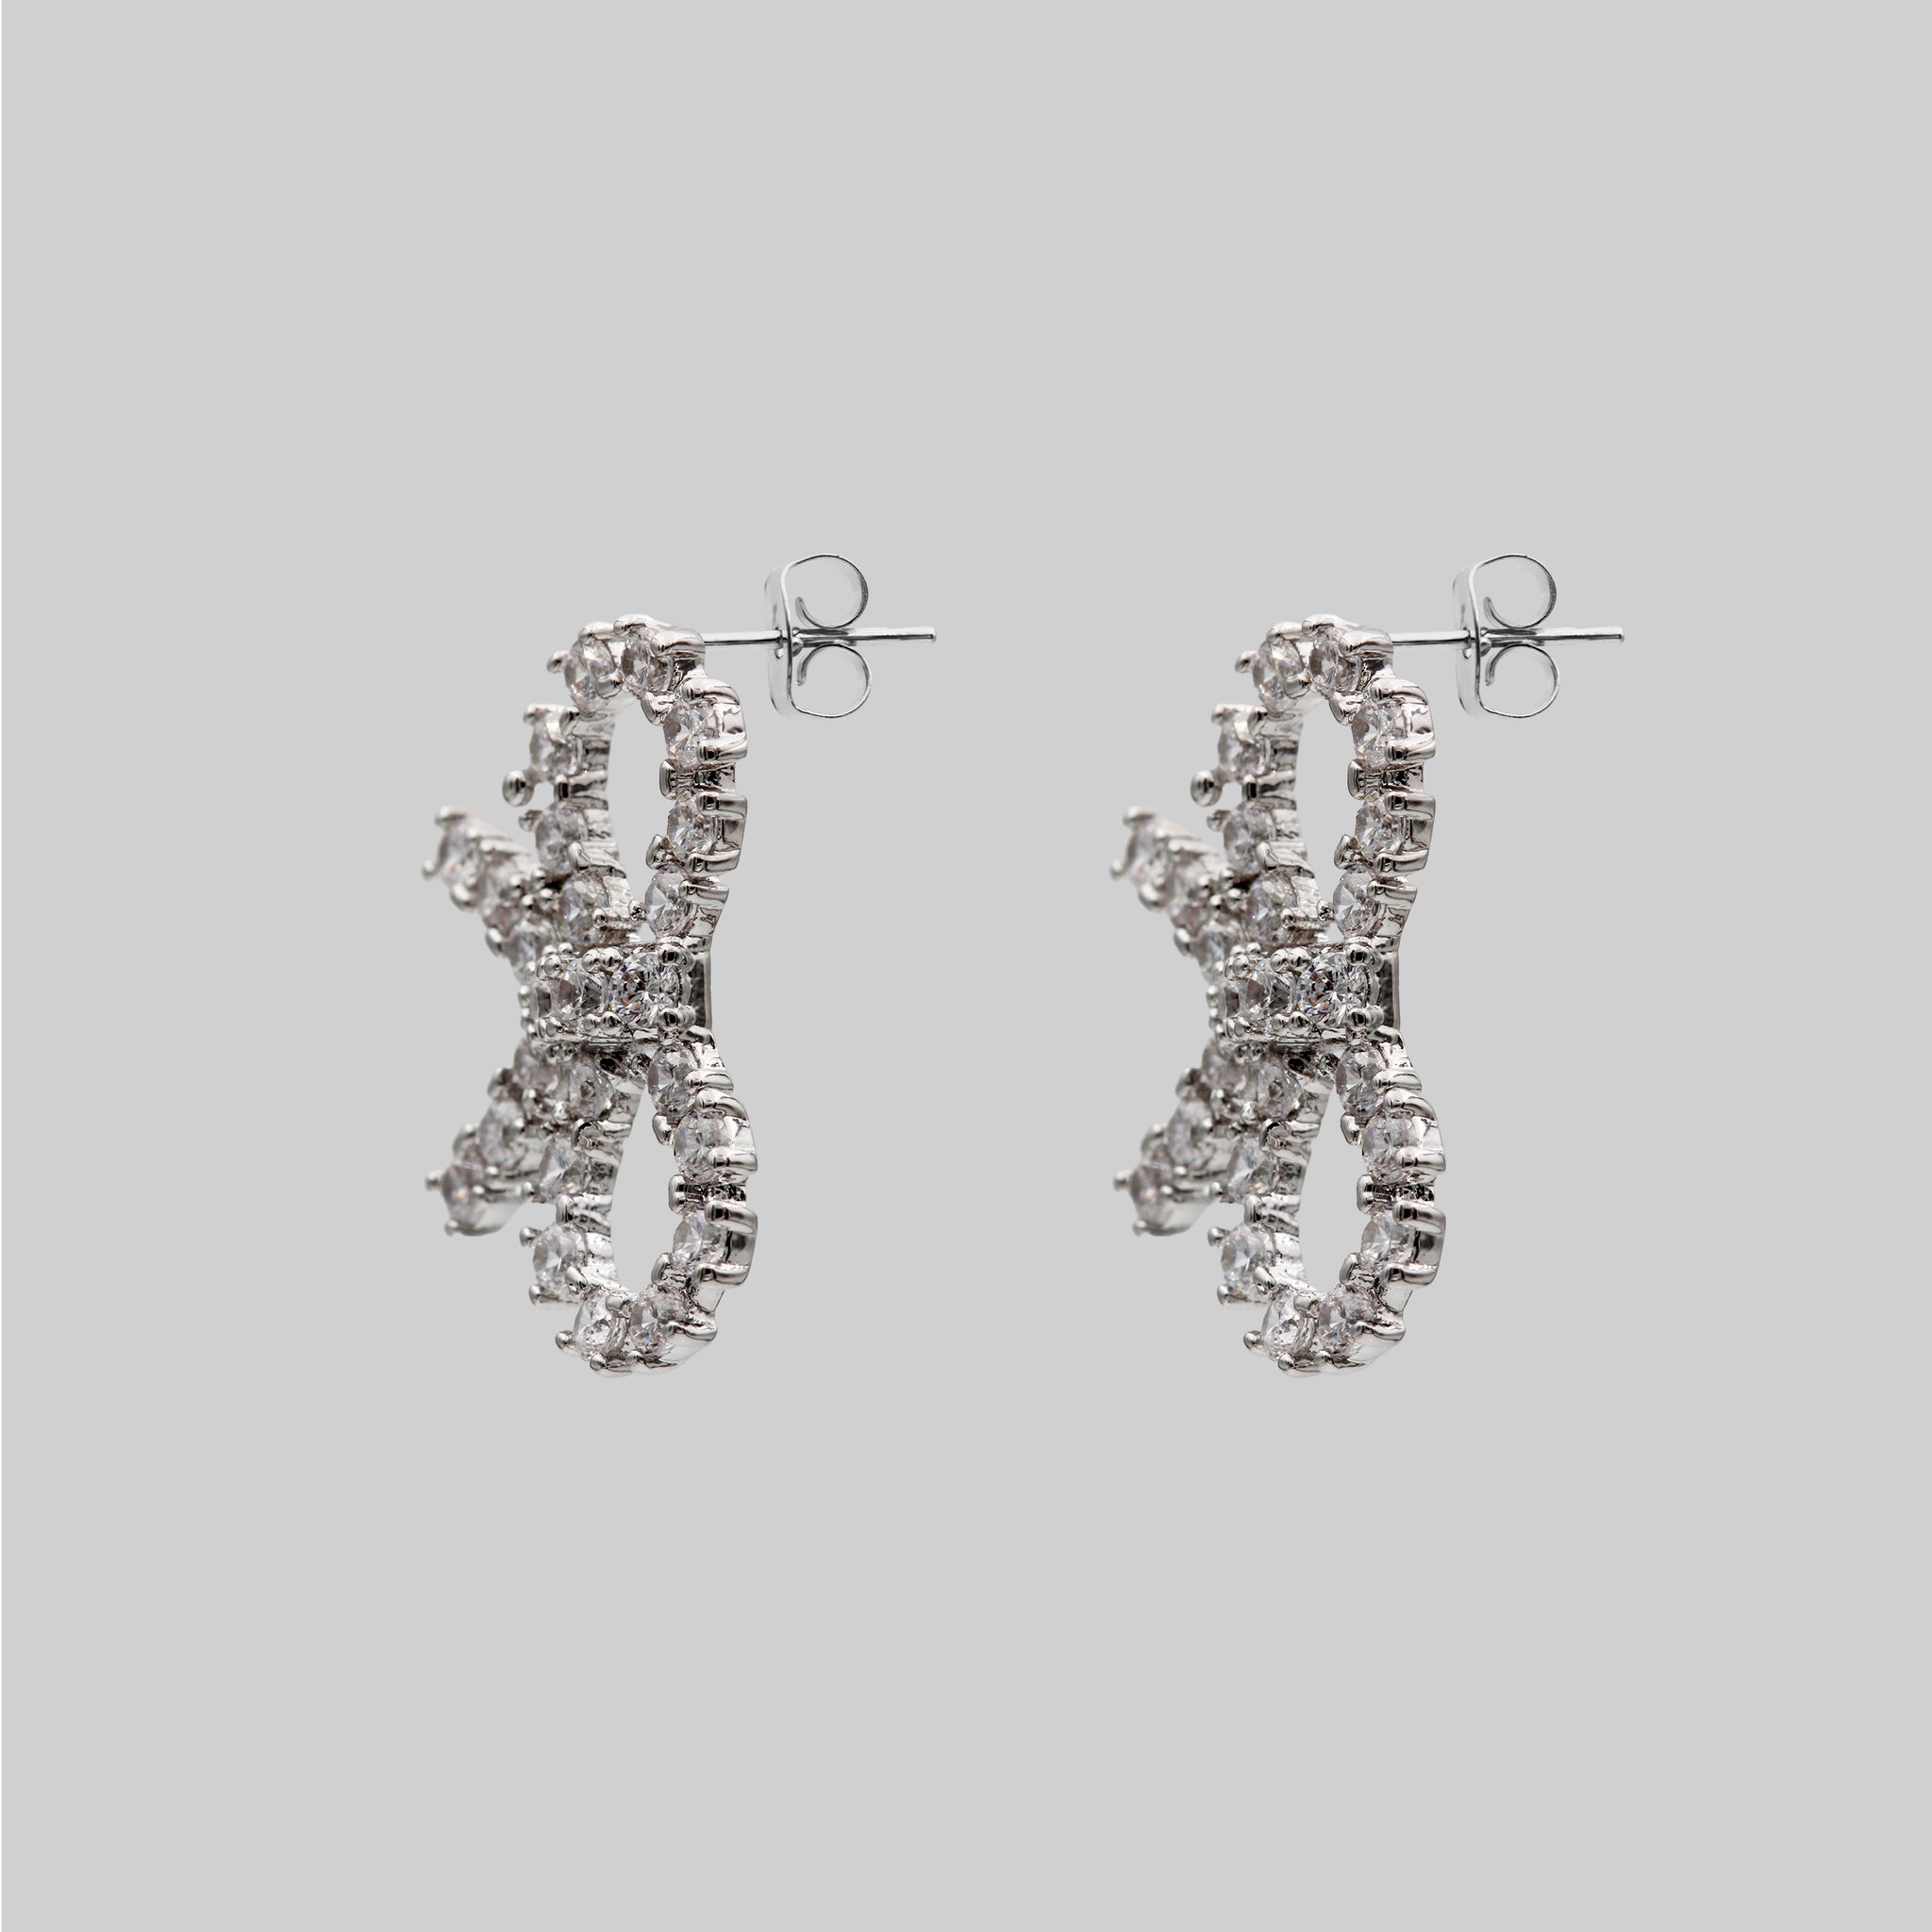 Crystal Rhinestone Bow Tie Earrings